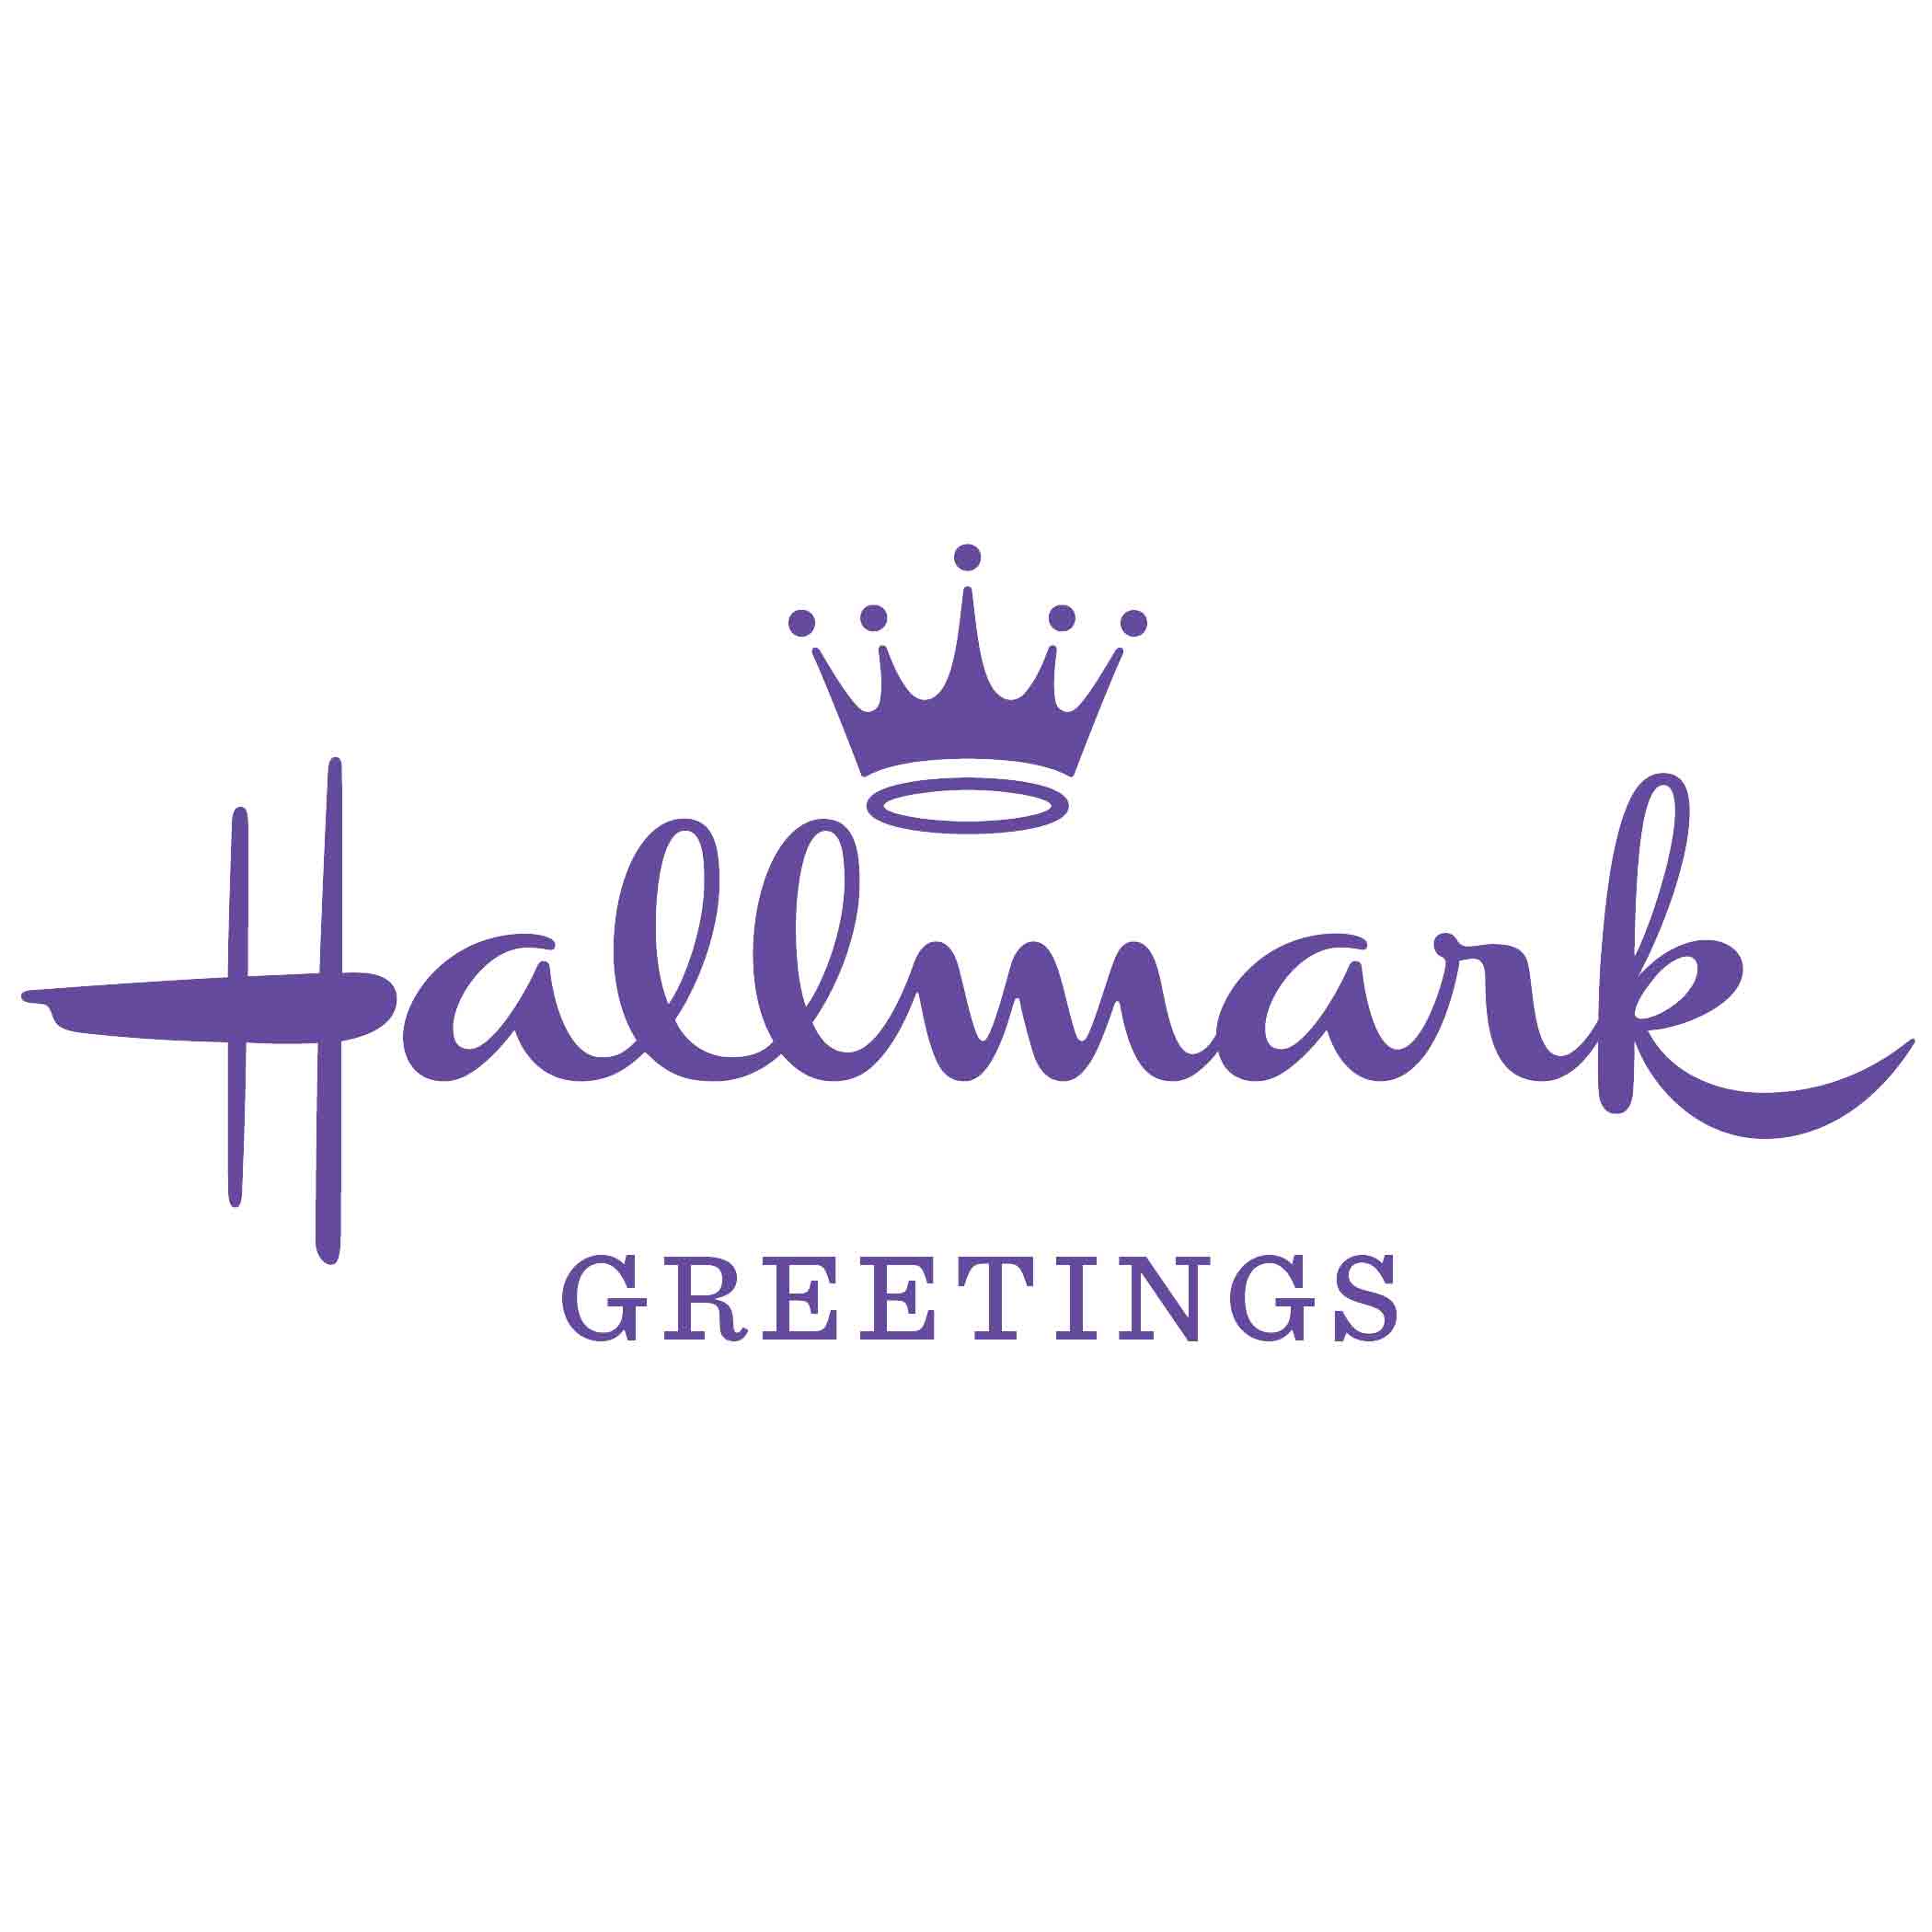 Hallmark Logo - Hallmark Greetings Logo - Hallmark Corporate